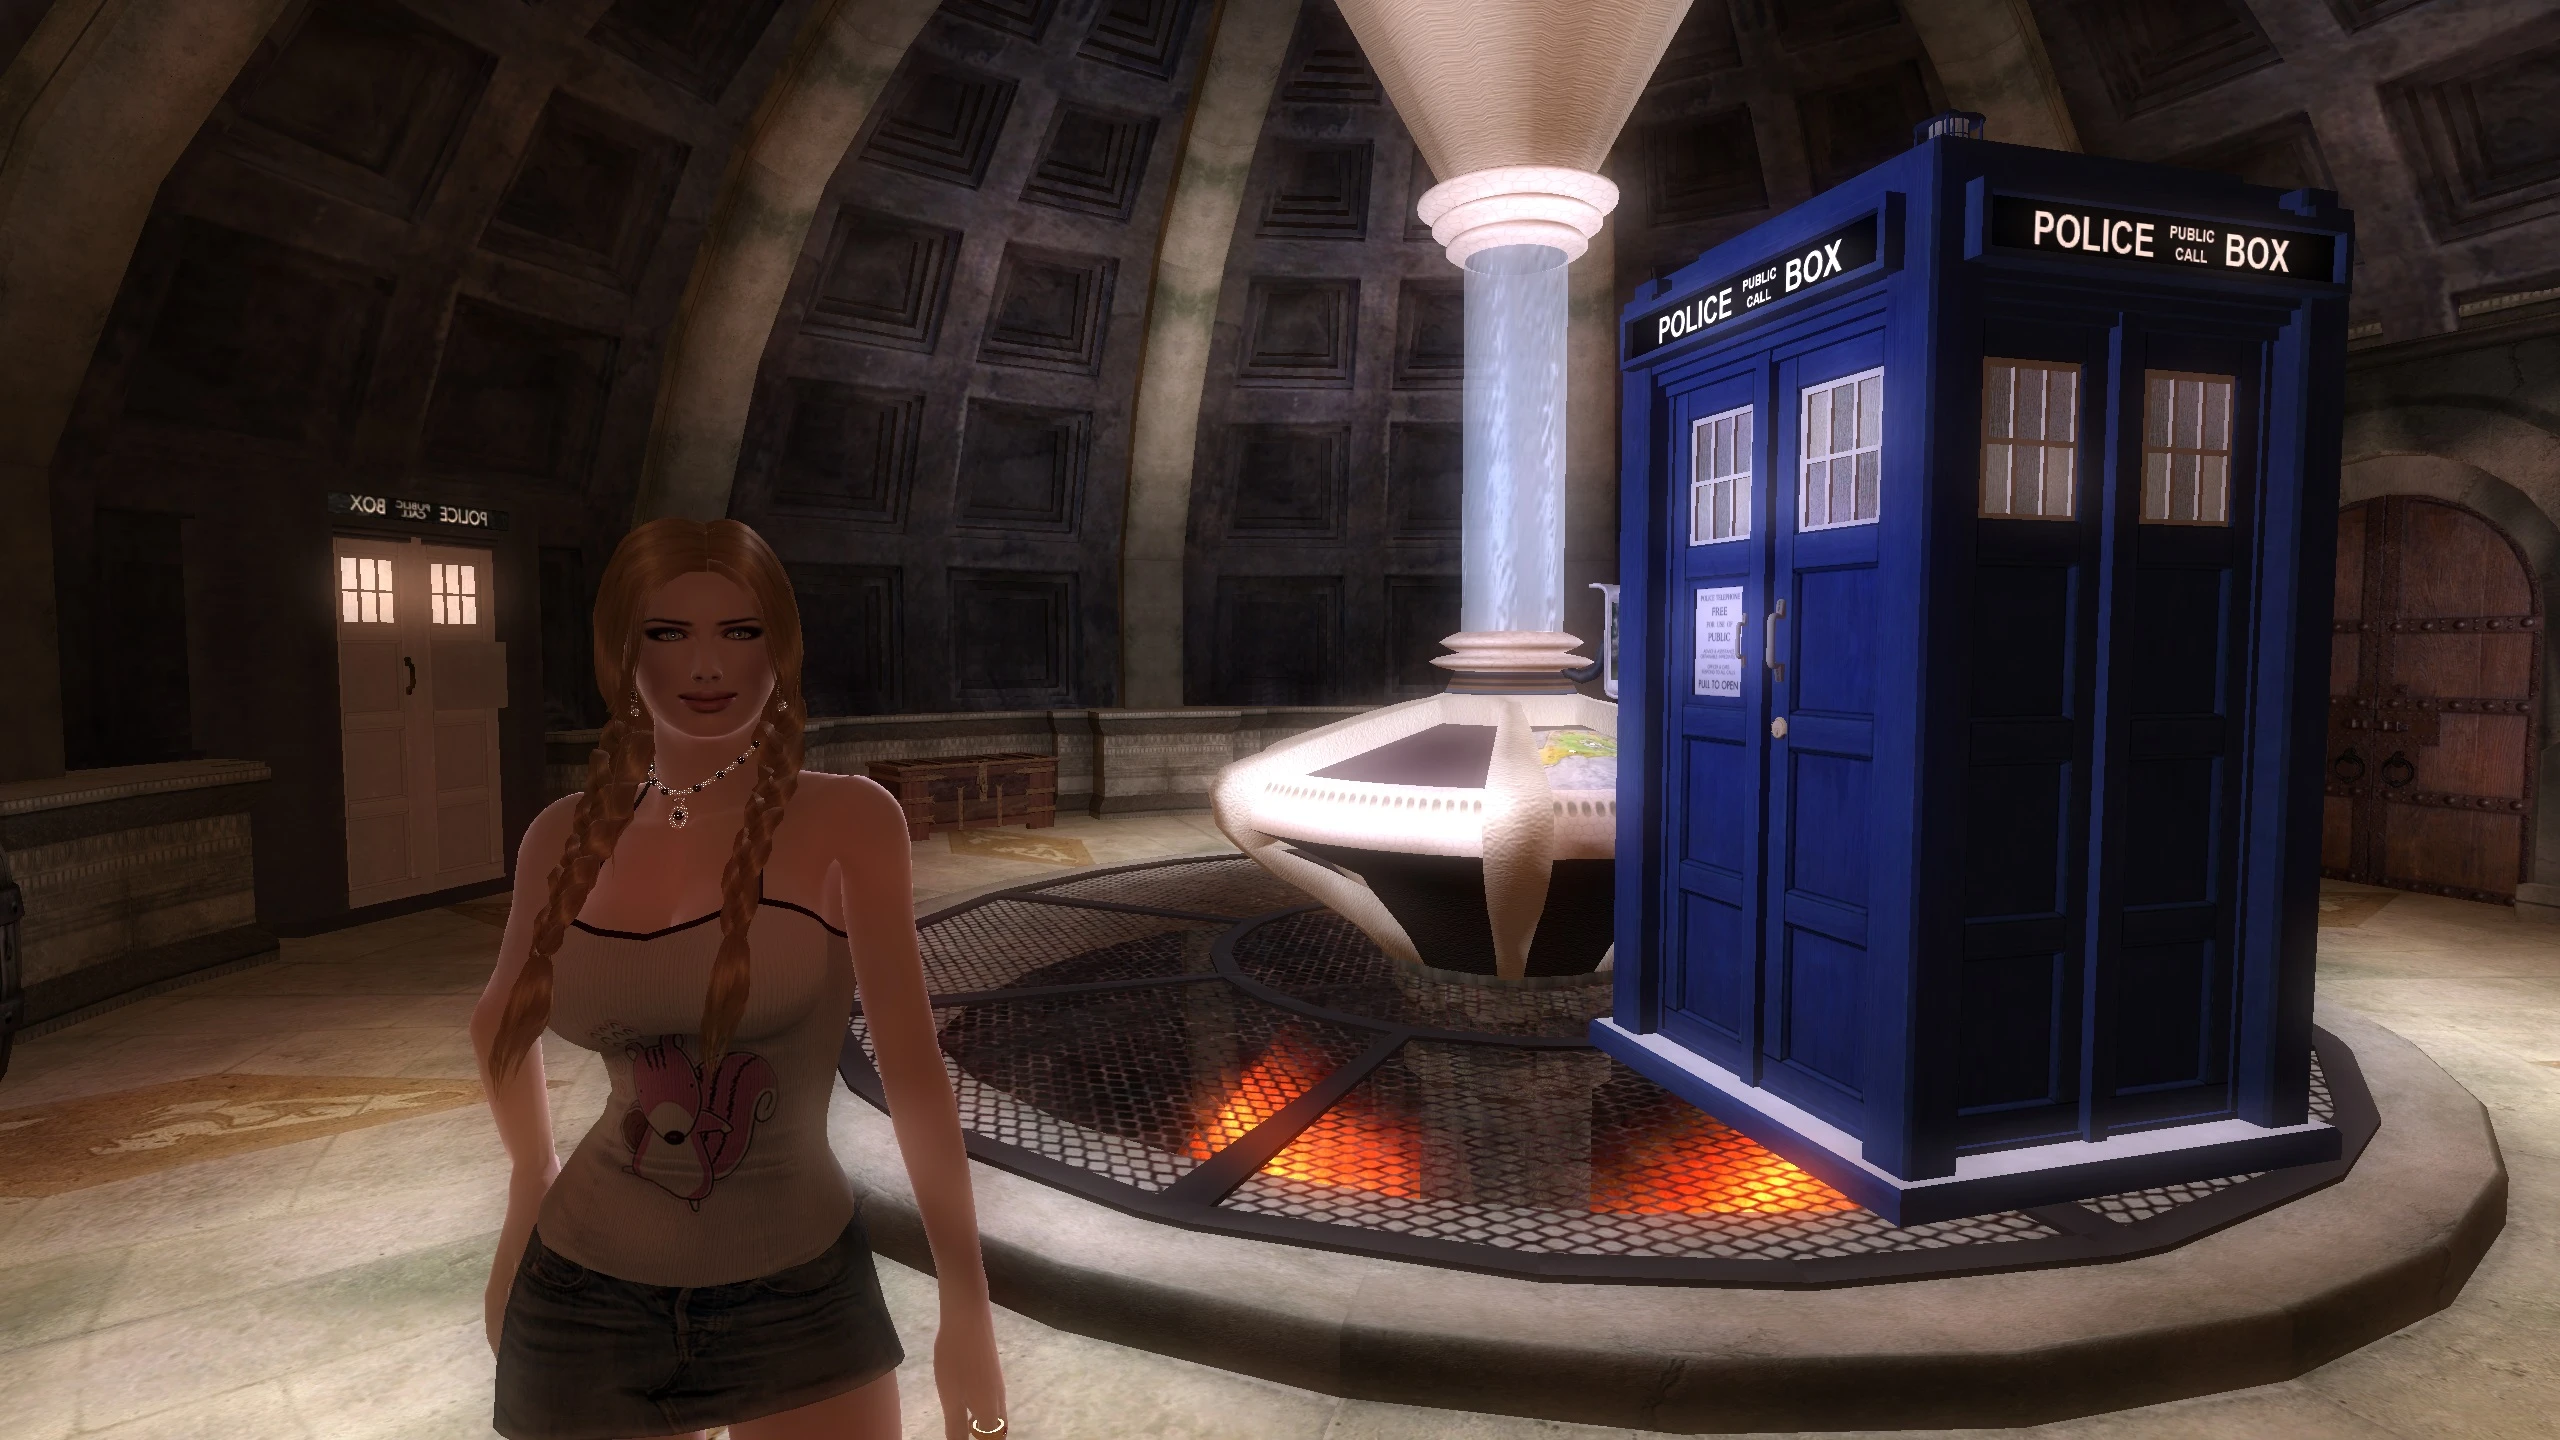 Vilja in the TARDIS